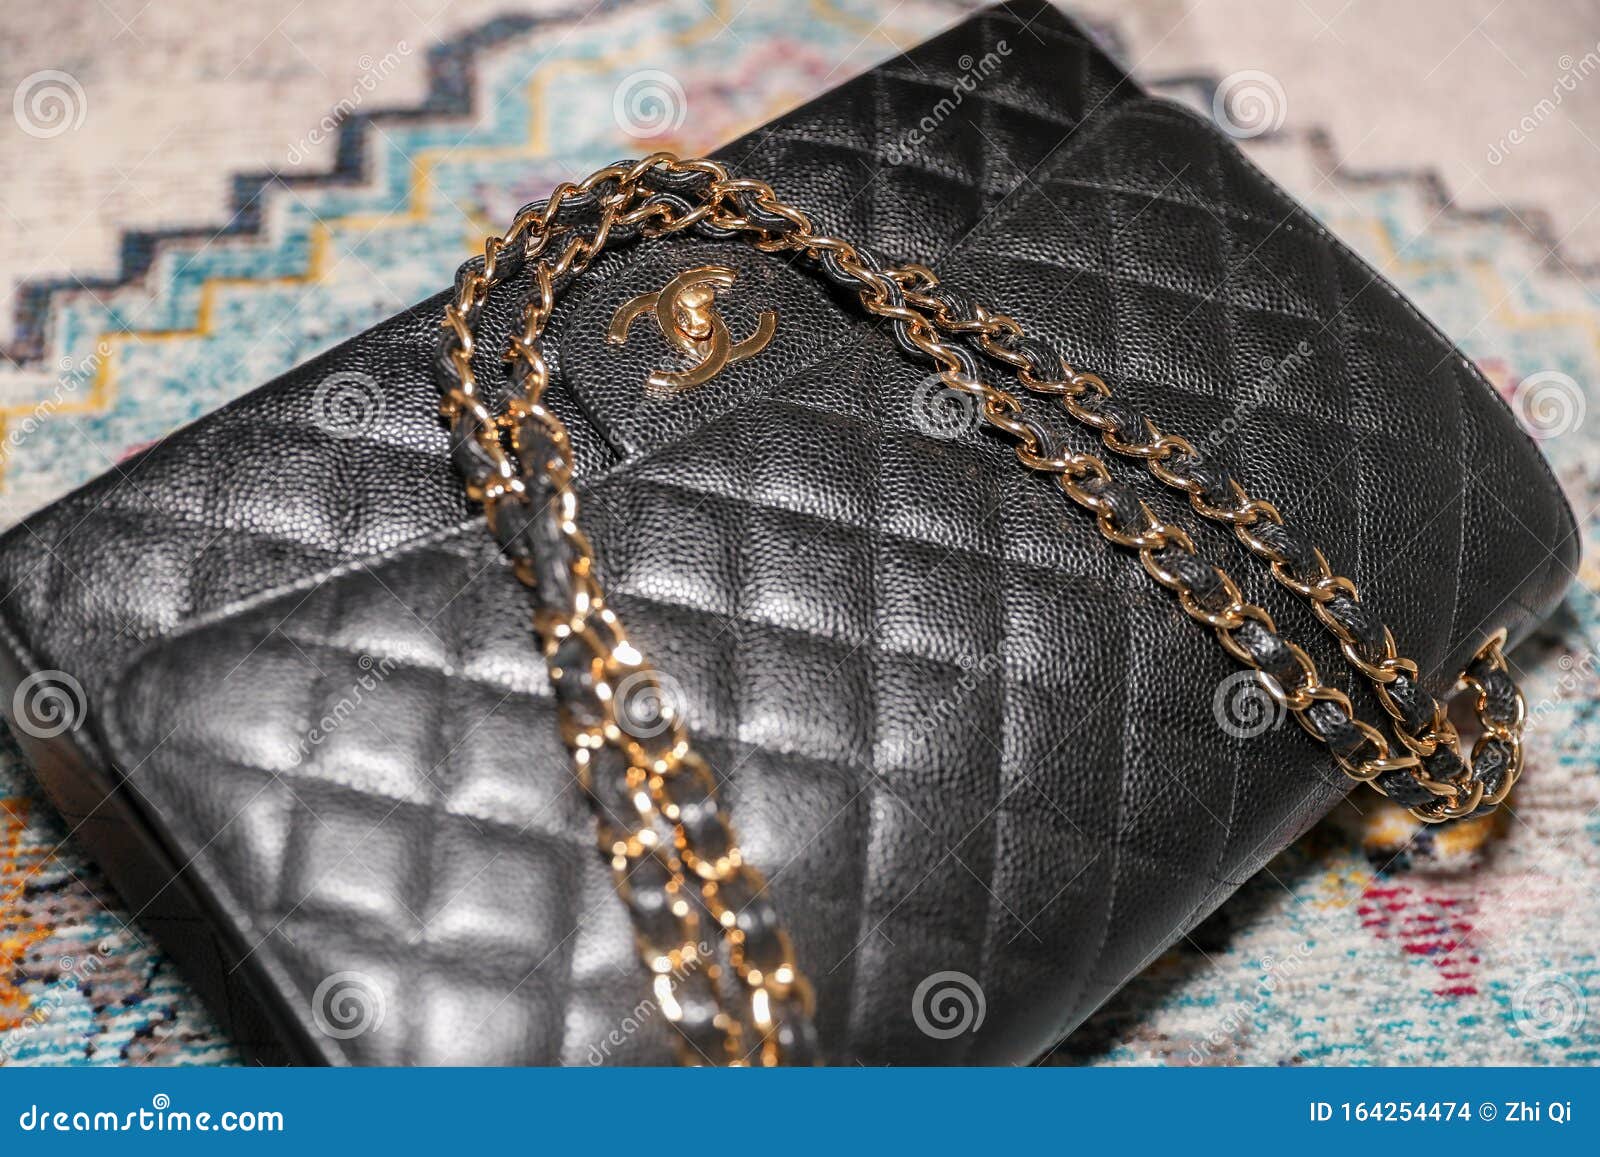 El bolso 2.55 pre-owned de Chanel